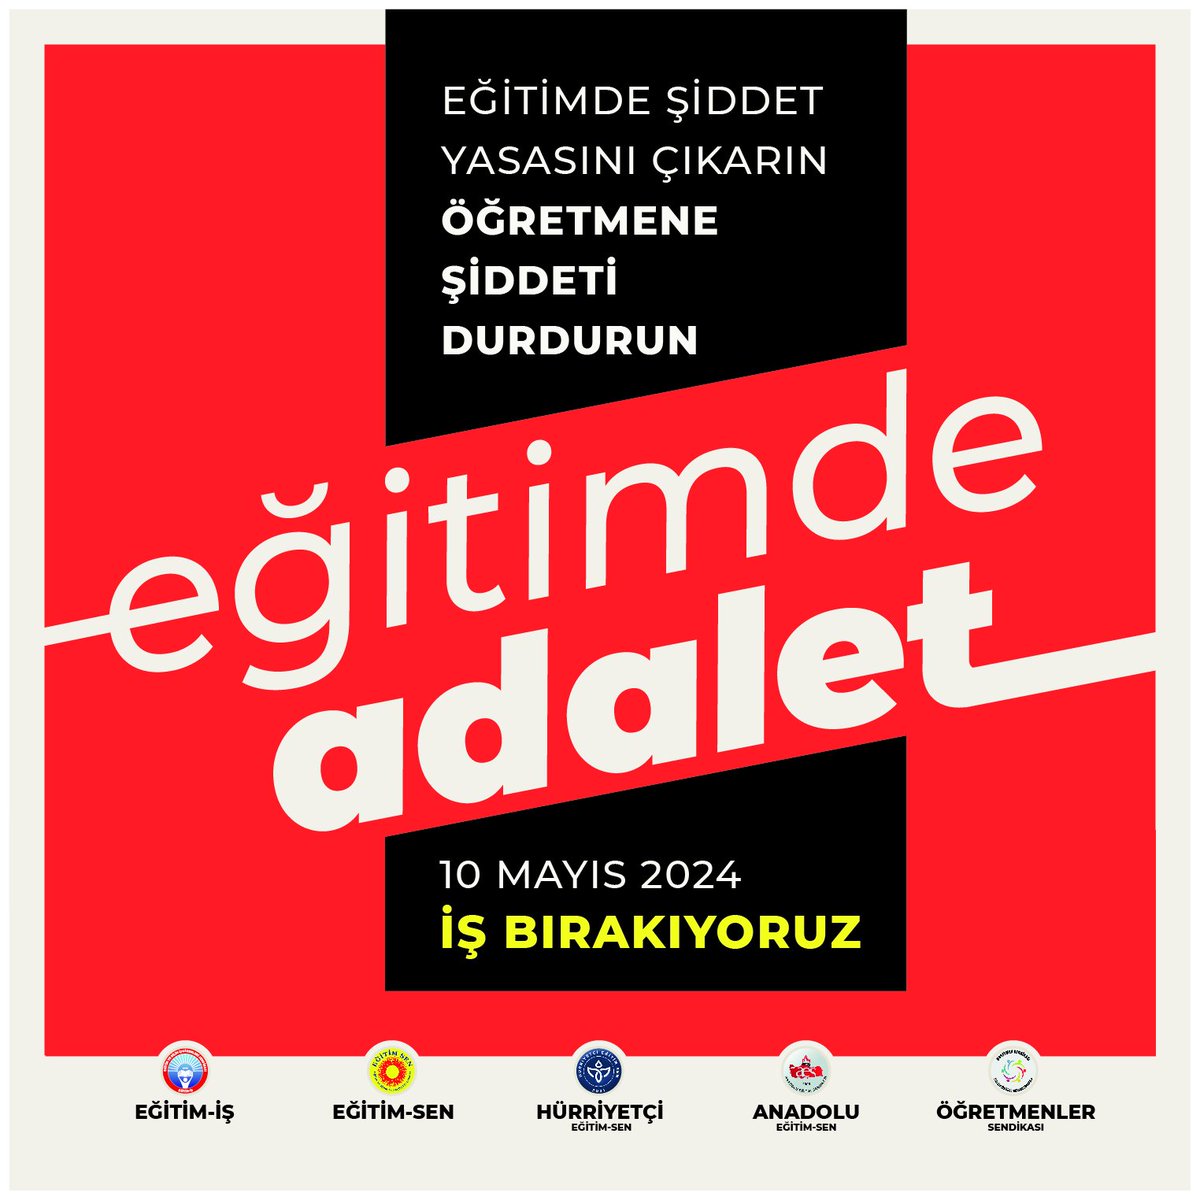 Ankara| Yarın eğitim sendikaları ile birlikte Milli Eğitim Bakanlığı önünde buluşuyoruz ve TBMM'ye yürüyoruz. 🕧Saat 11.00 Meslektaşlarımızı davet ediyoruz. İş yerlerinde ise ortak açıklamalar okuyoruz ve siyah giyiniyoruz. #EgitimdeŞiddeteHayır